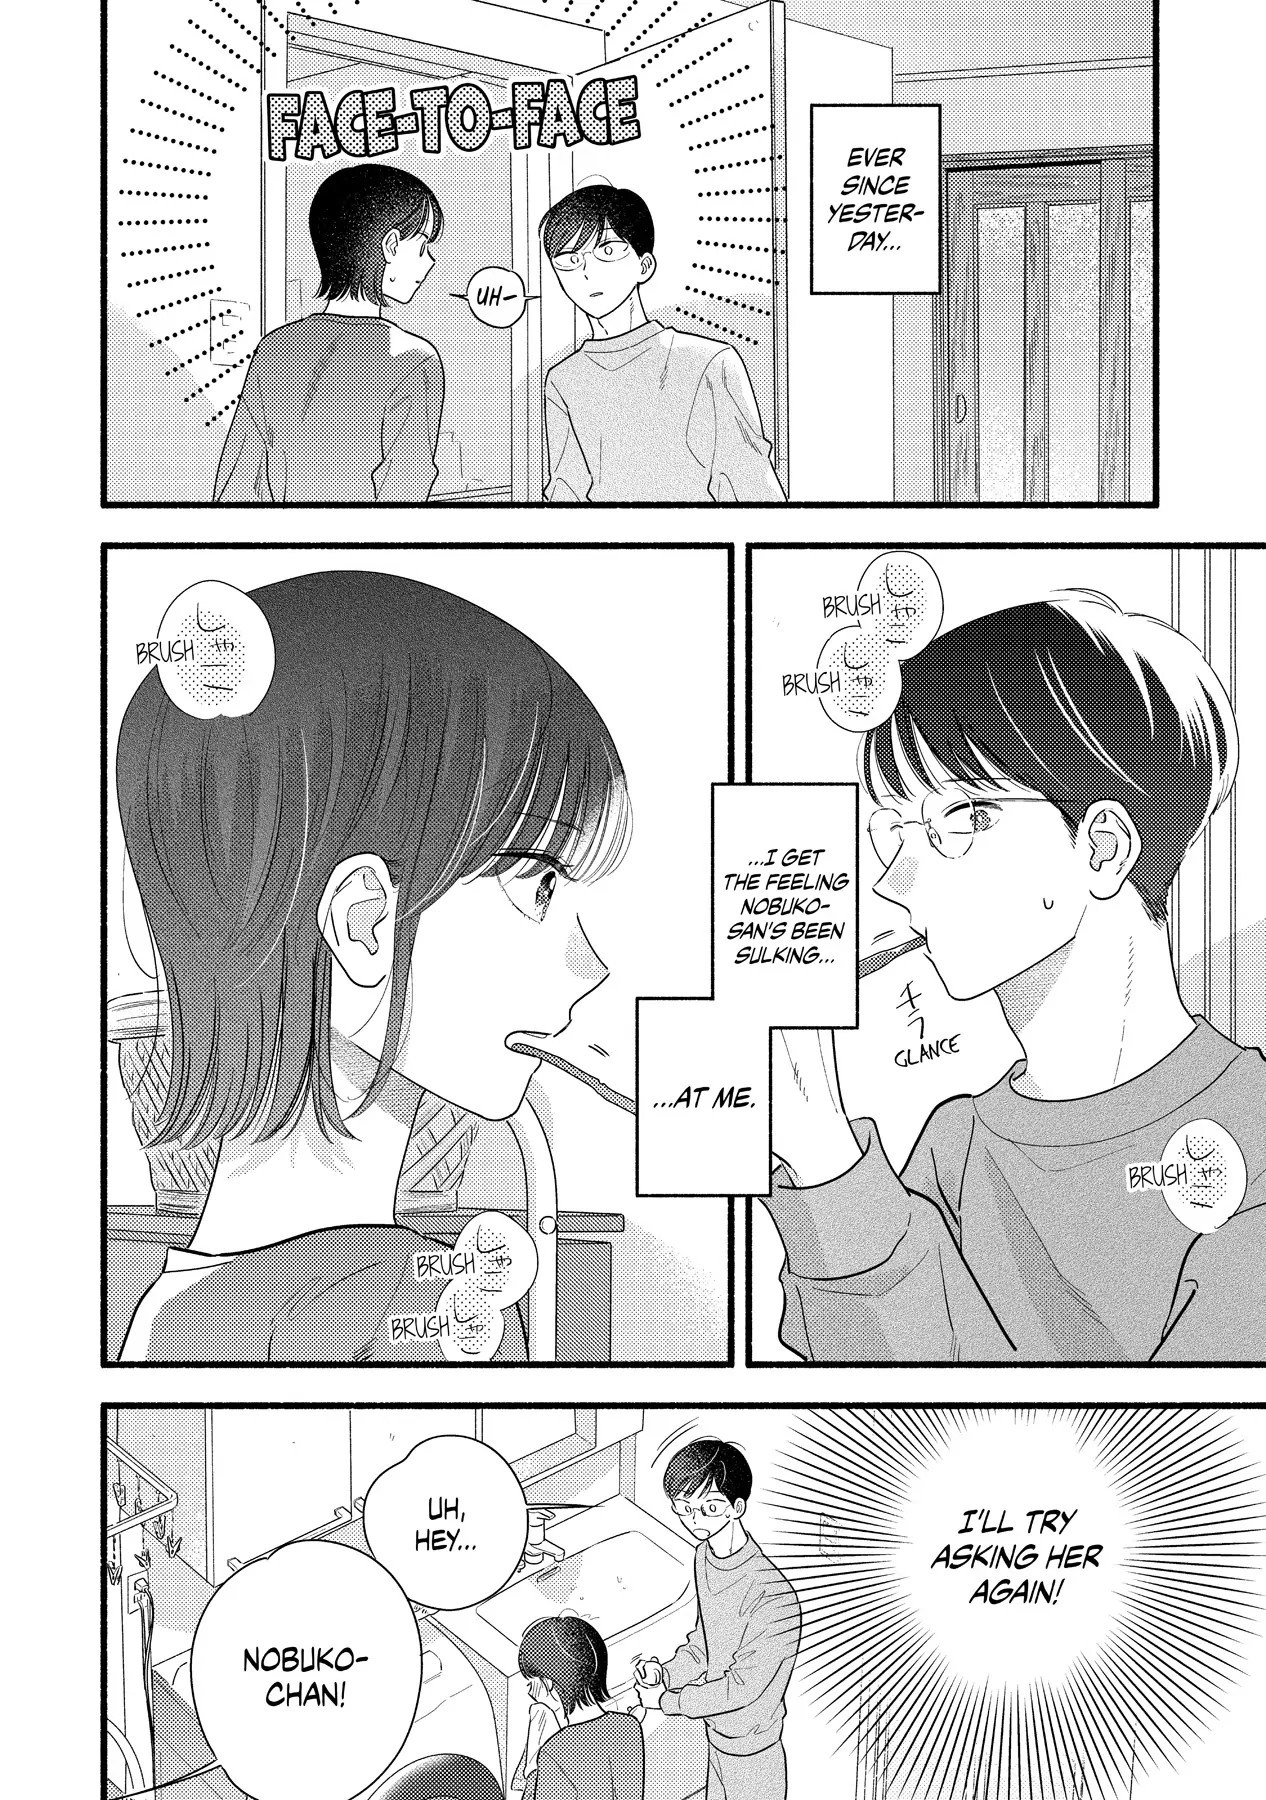 Mobuko's Love - chapter 93 - #2